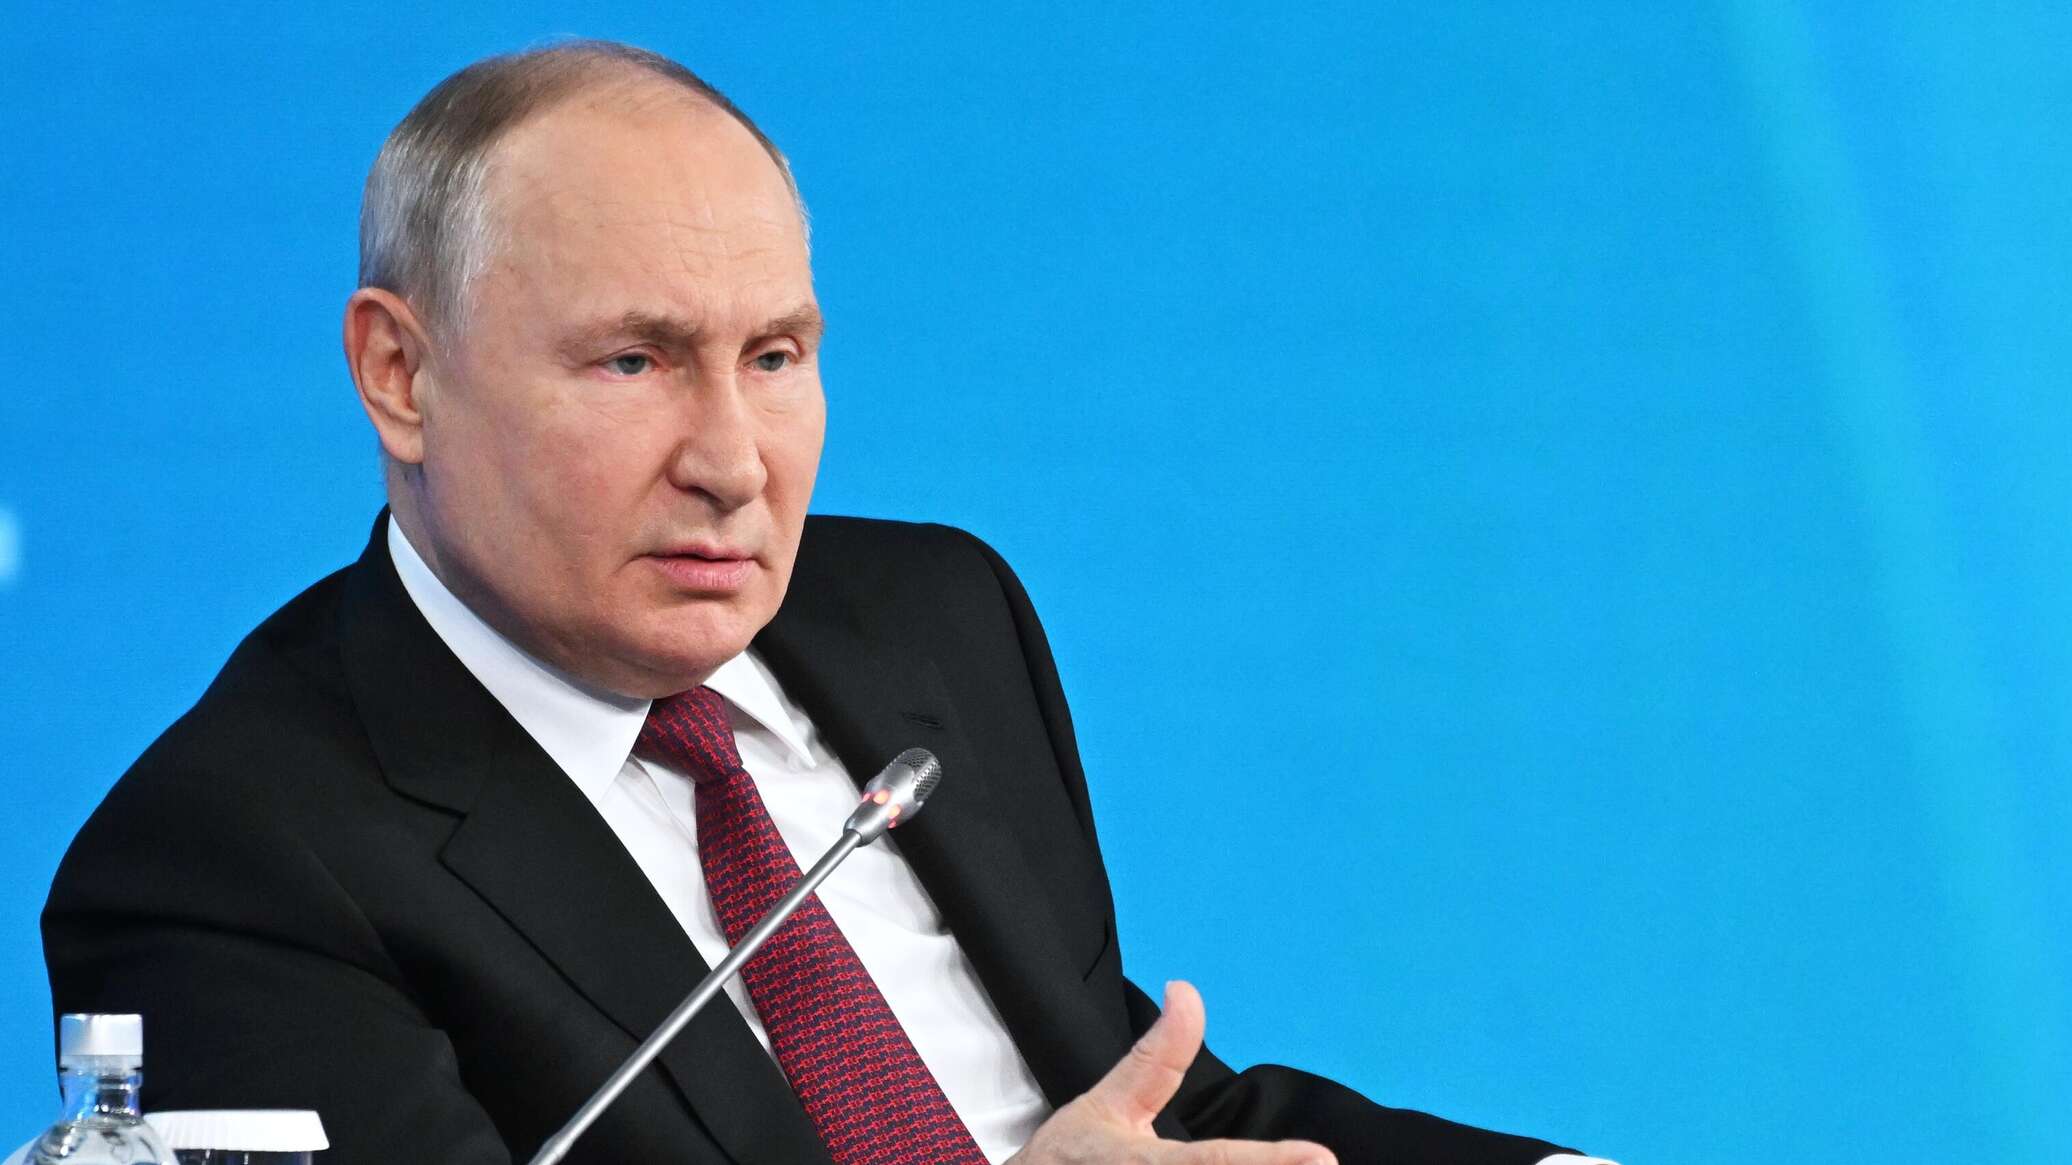 وسائل إعلام أميركية تكشف إجراء بوتين الذي "صدم نظام واشنطن"